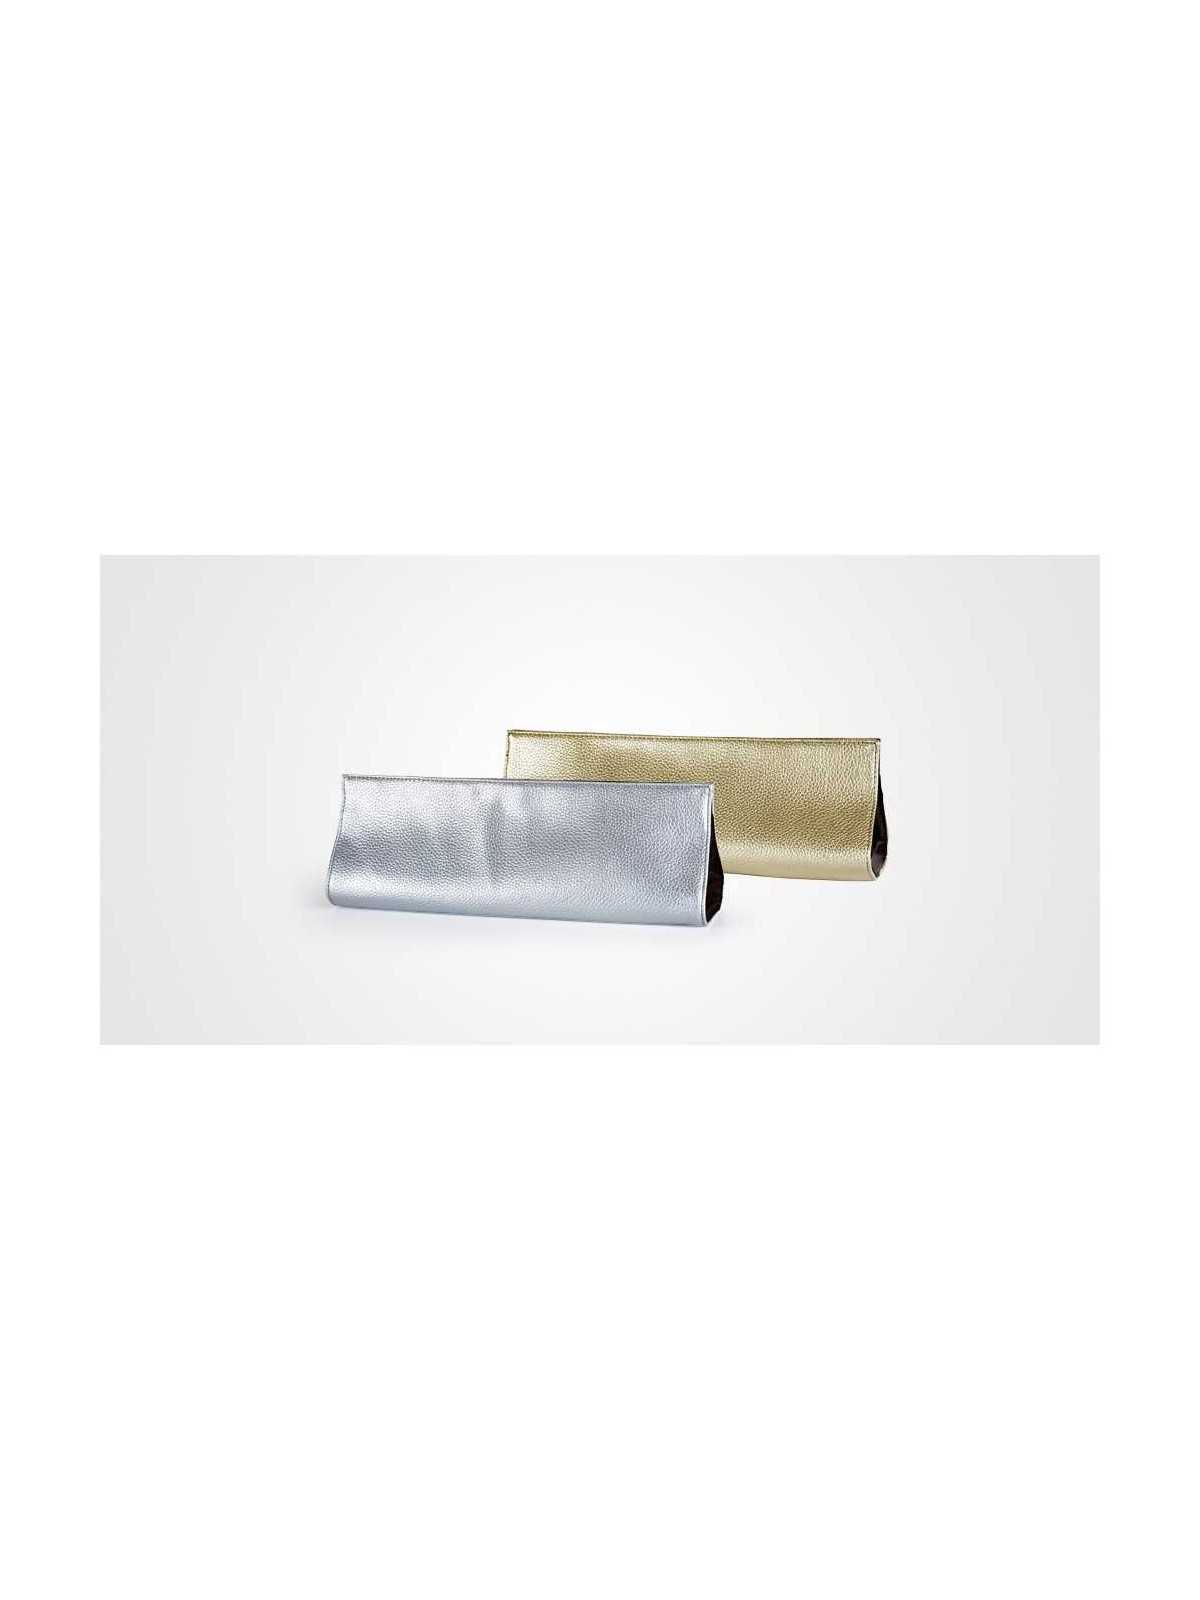 Regala Plancha de pelo profesional Perfect Beauty Dazzlinghair Gold 230ºC con nuestra selección de Tenacillas y Planchas por tan sólo 49,95 € o precio específico 49,95 € en Thalie Care